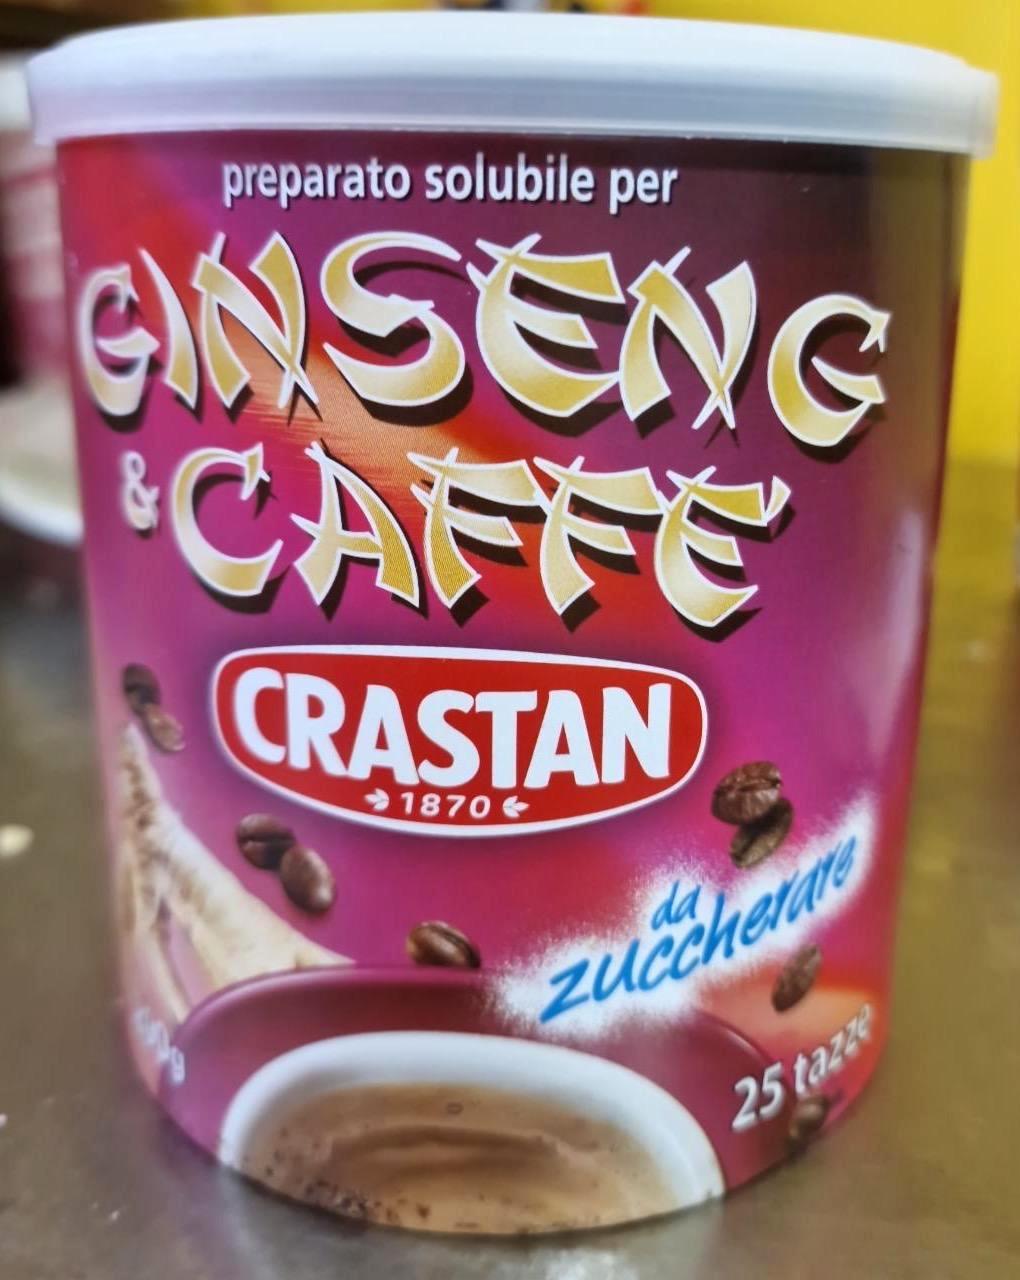 Képek - Ginseng & caffe Crastan